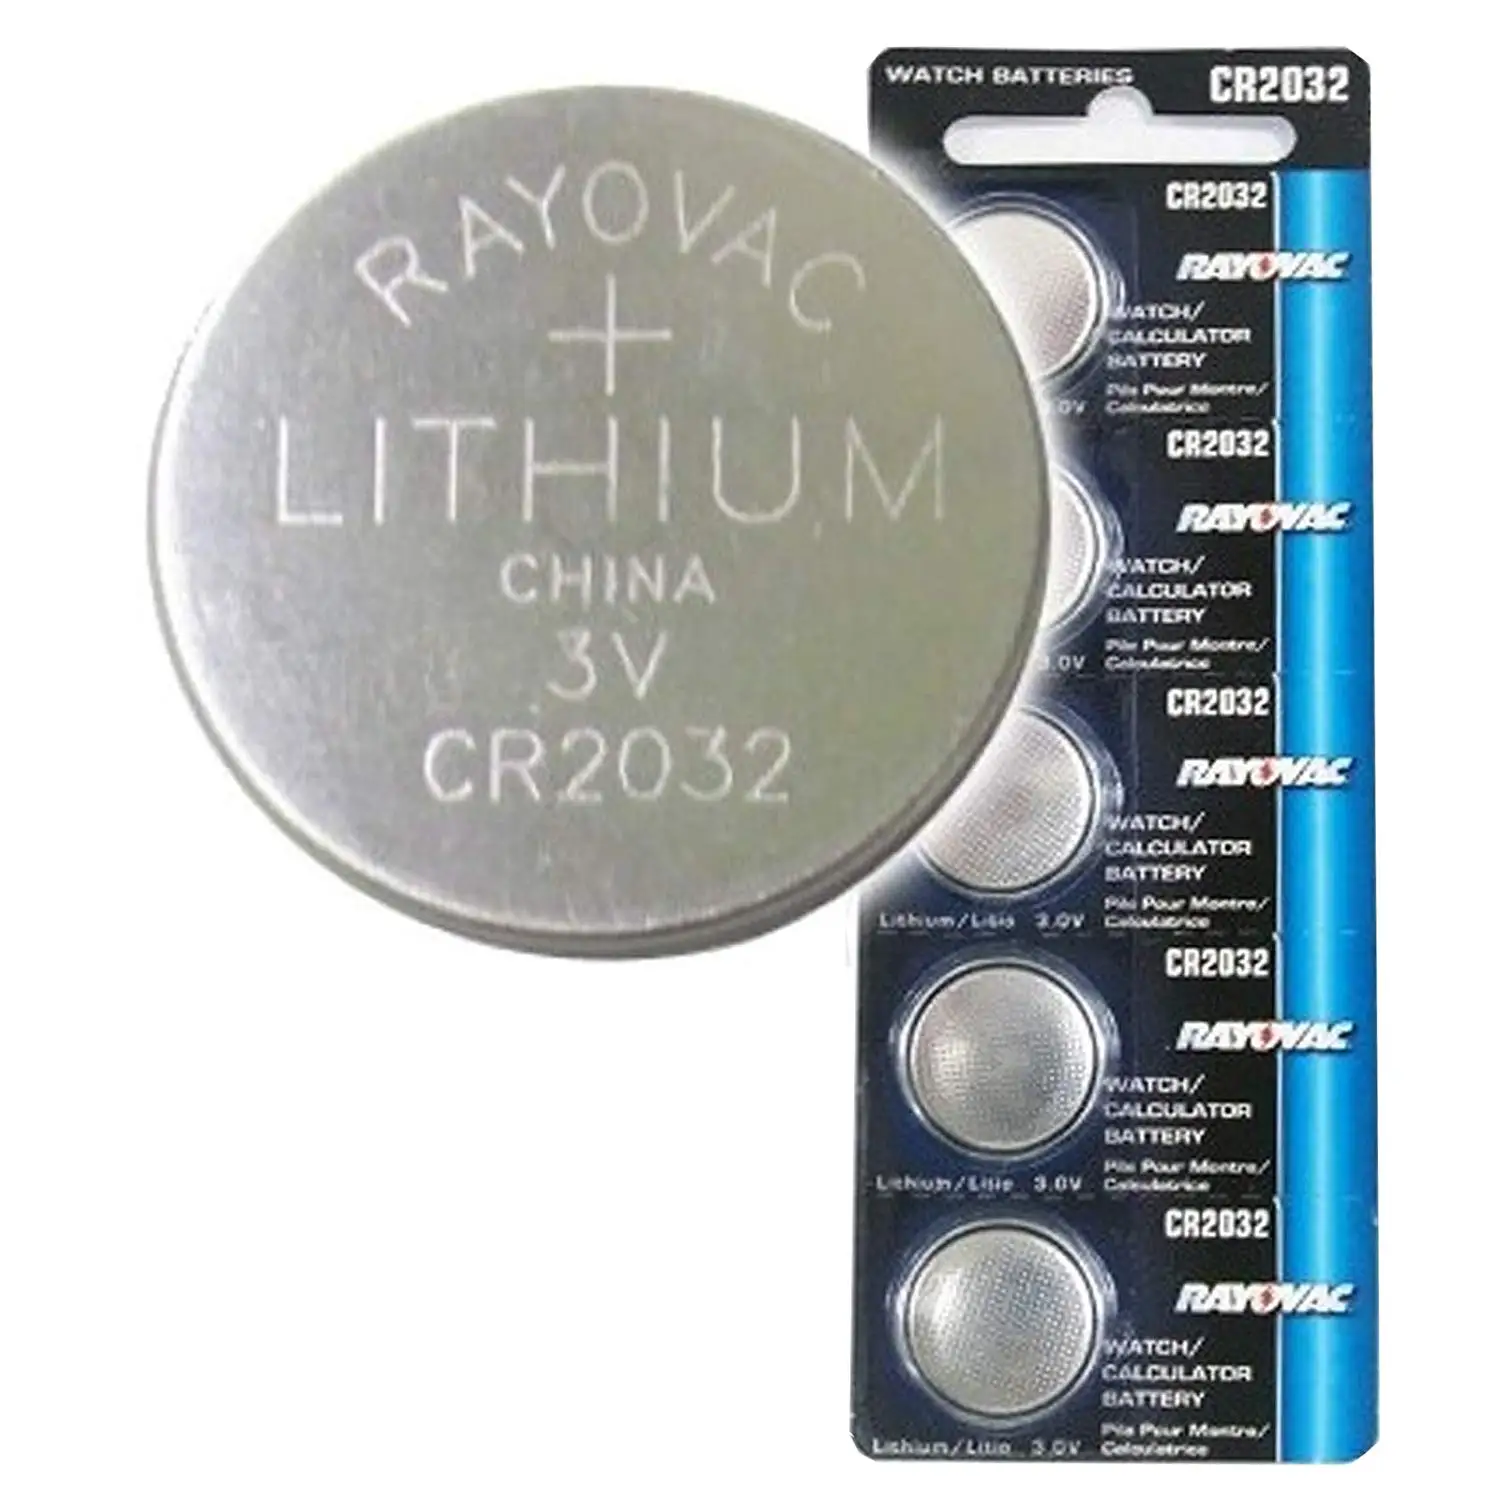 cheap cr2032 batteries